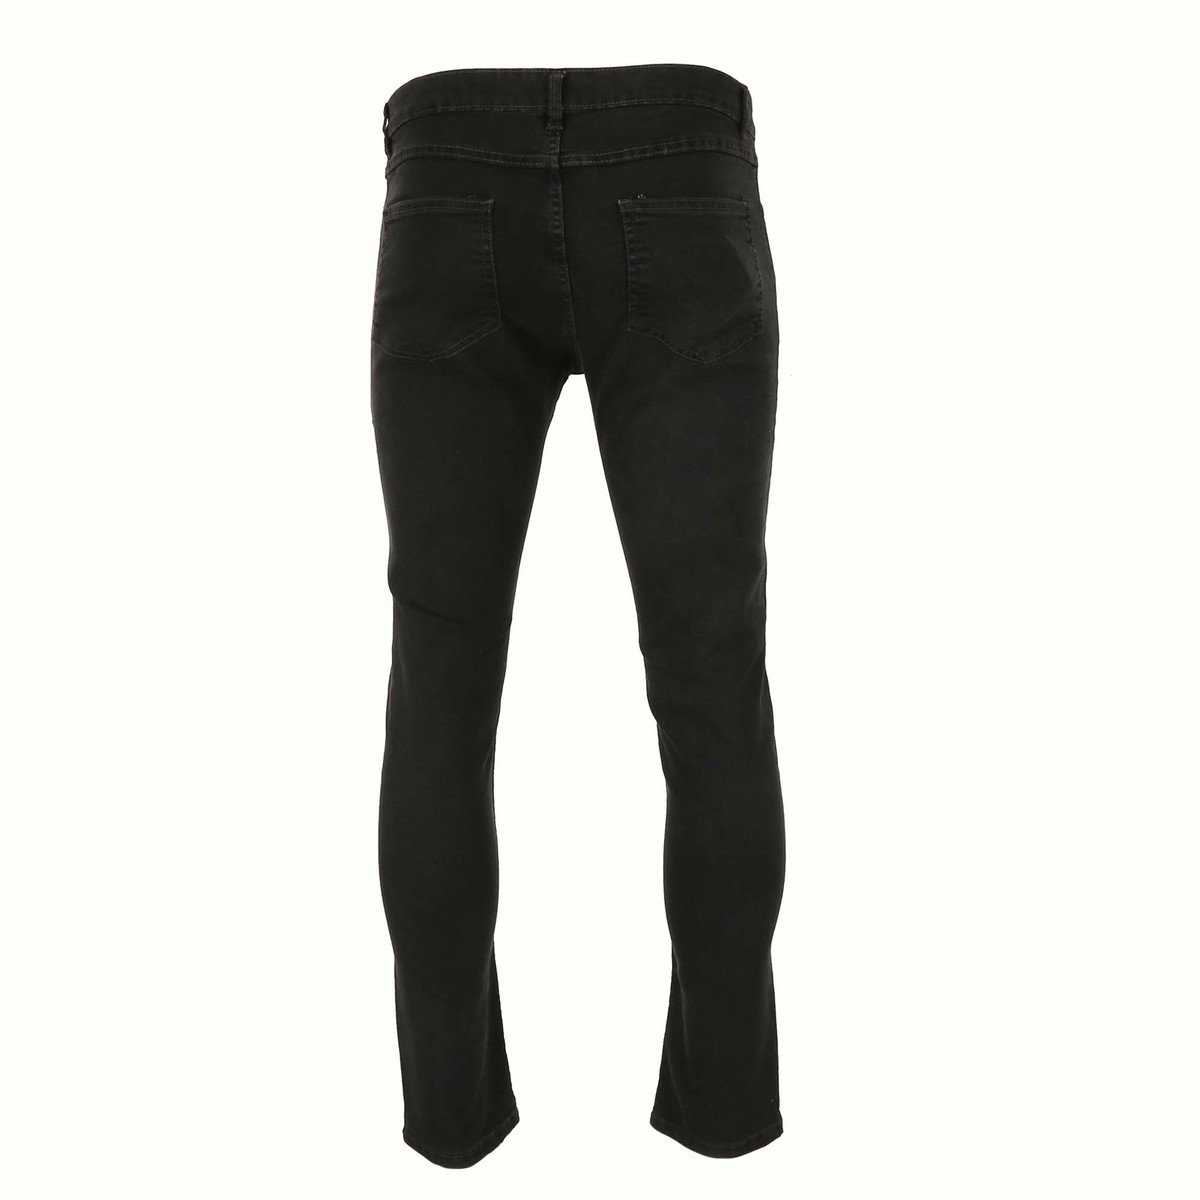 Reo Men's Denim Slim Fit Jeans BOM570C, DK.GREY 36